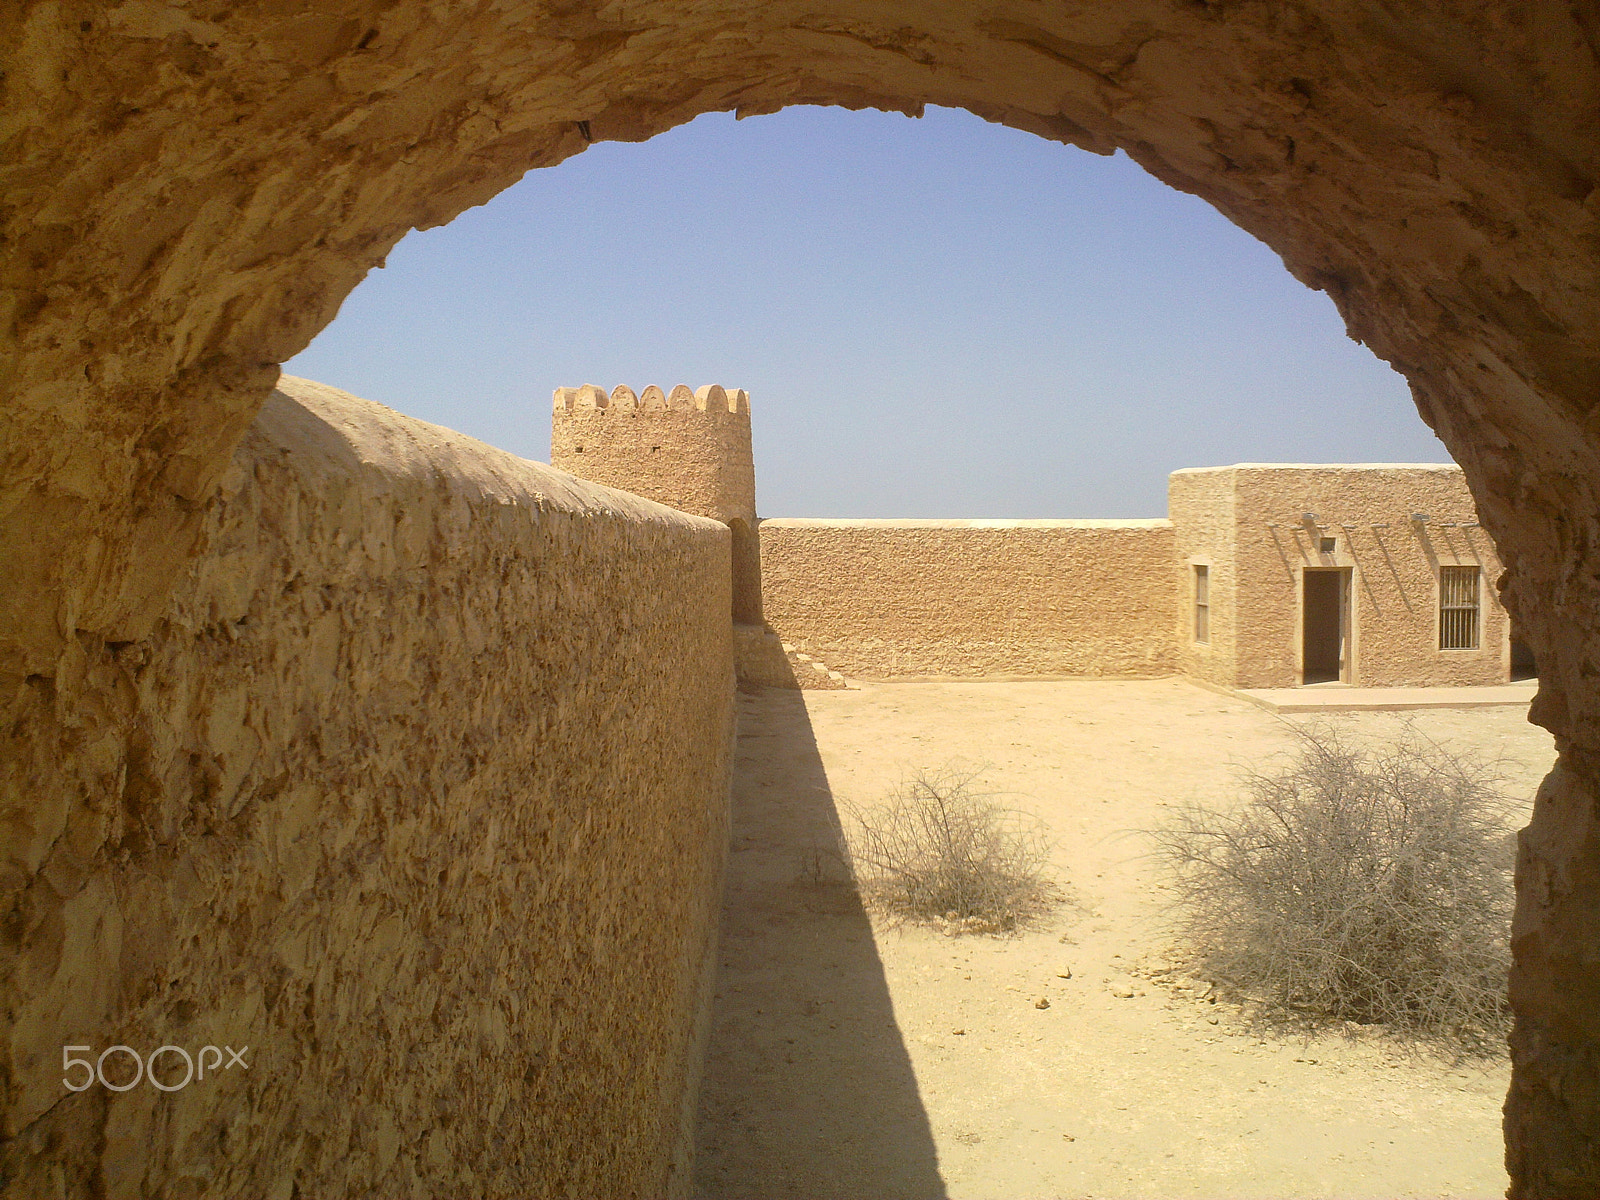 Nokia N86 8MP sample photo. Al thagab fort, qatar photography